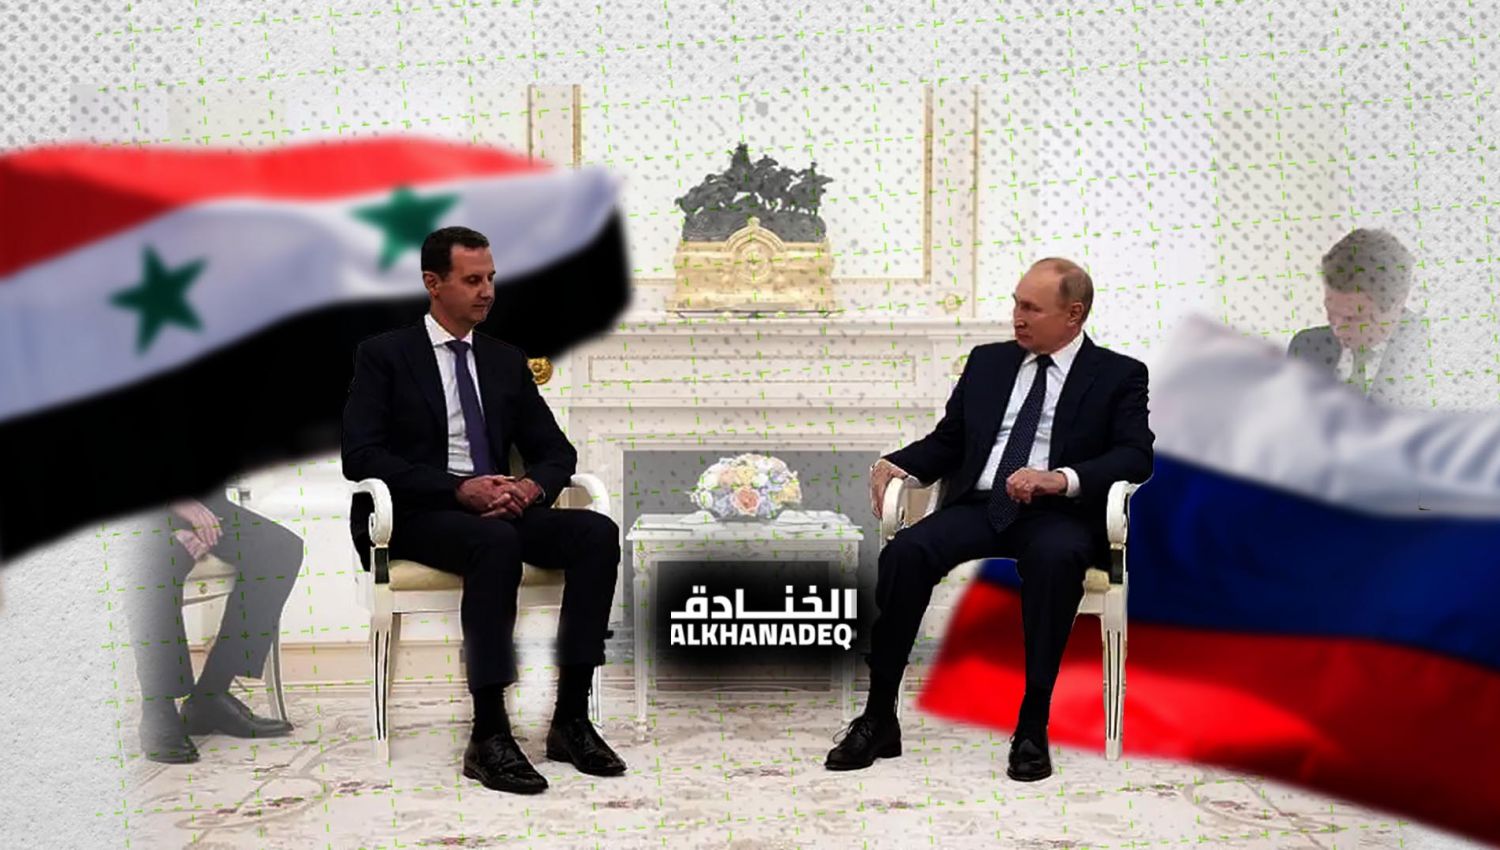 قمة الأسد وبوتين: نحو استكمال تحرير سوريا؟!